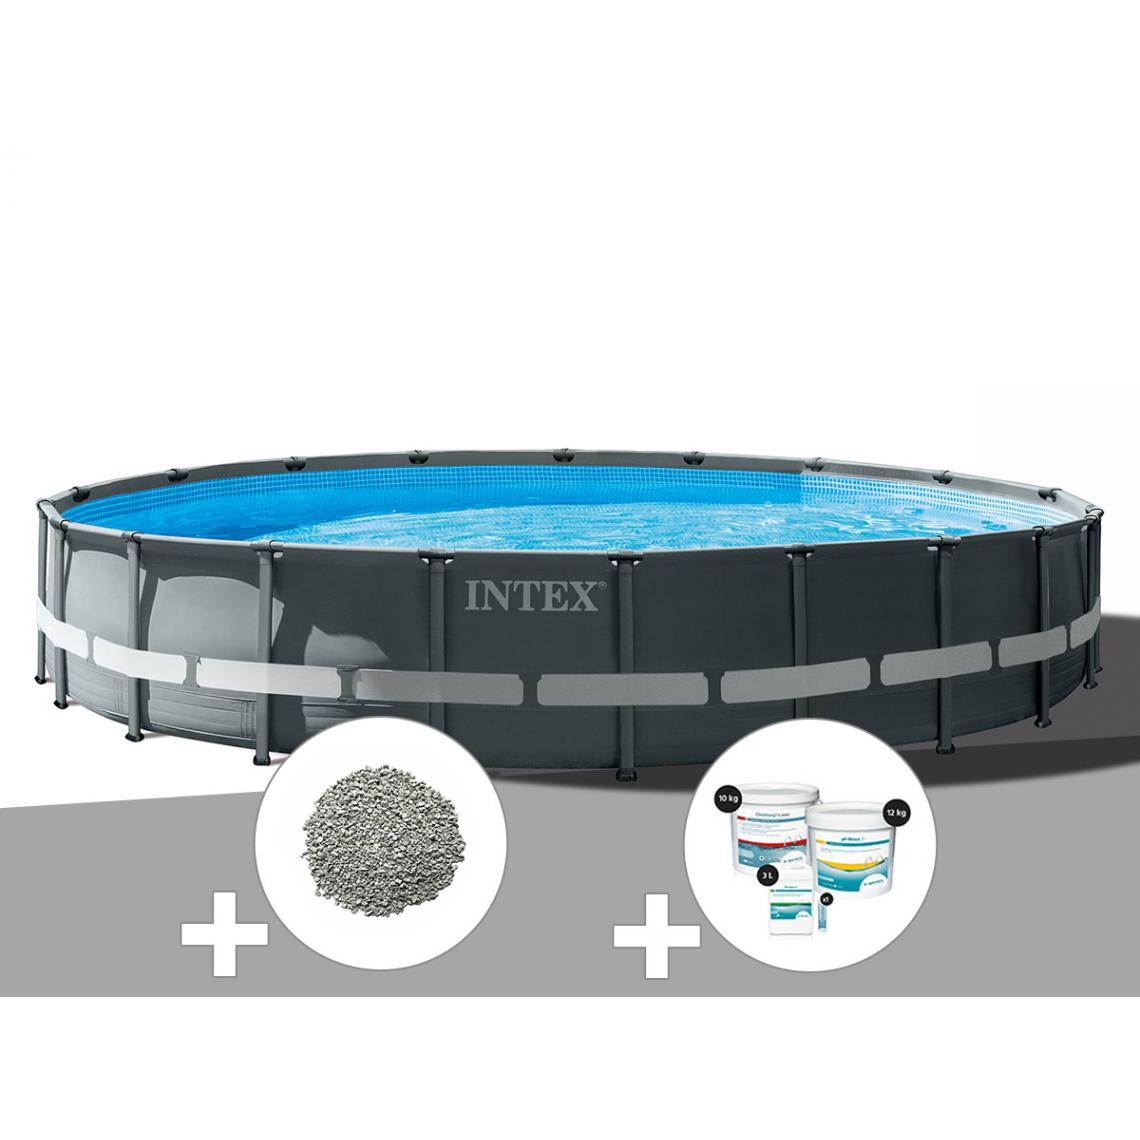 Intex - Kit piscine tubulaire Intex Ultra XTR Frame ronde 6,10 x 1,22 m + 20 kg de zéolite + Kit de traitement au chlore - Piscine Tubulaire